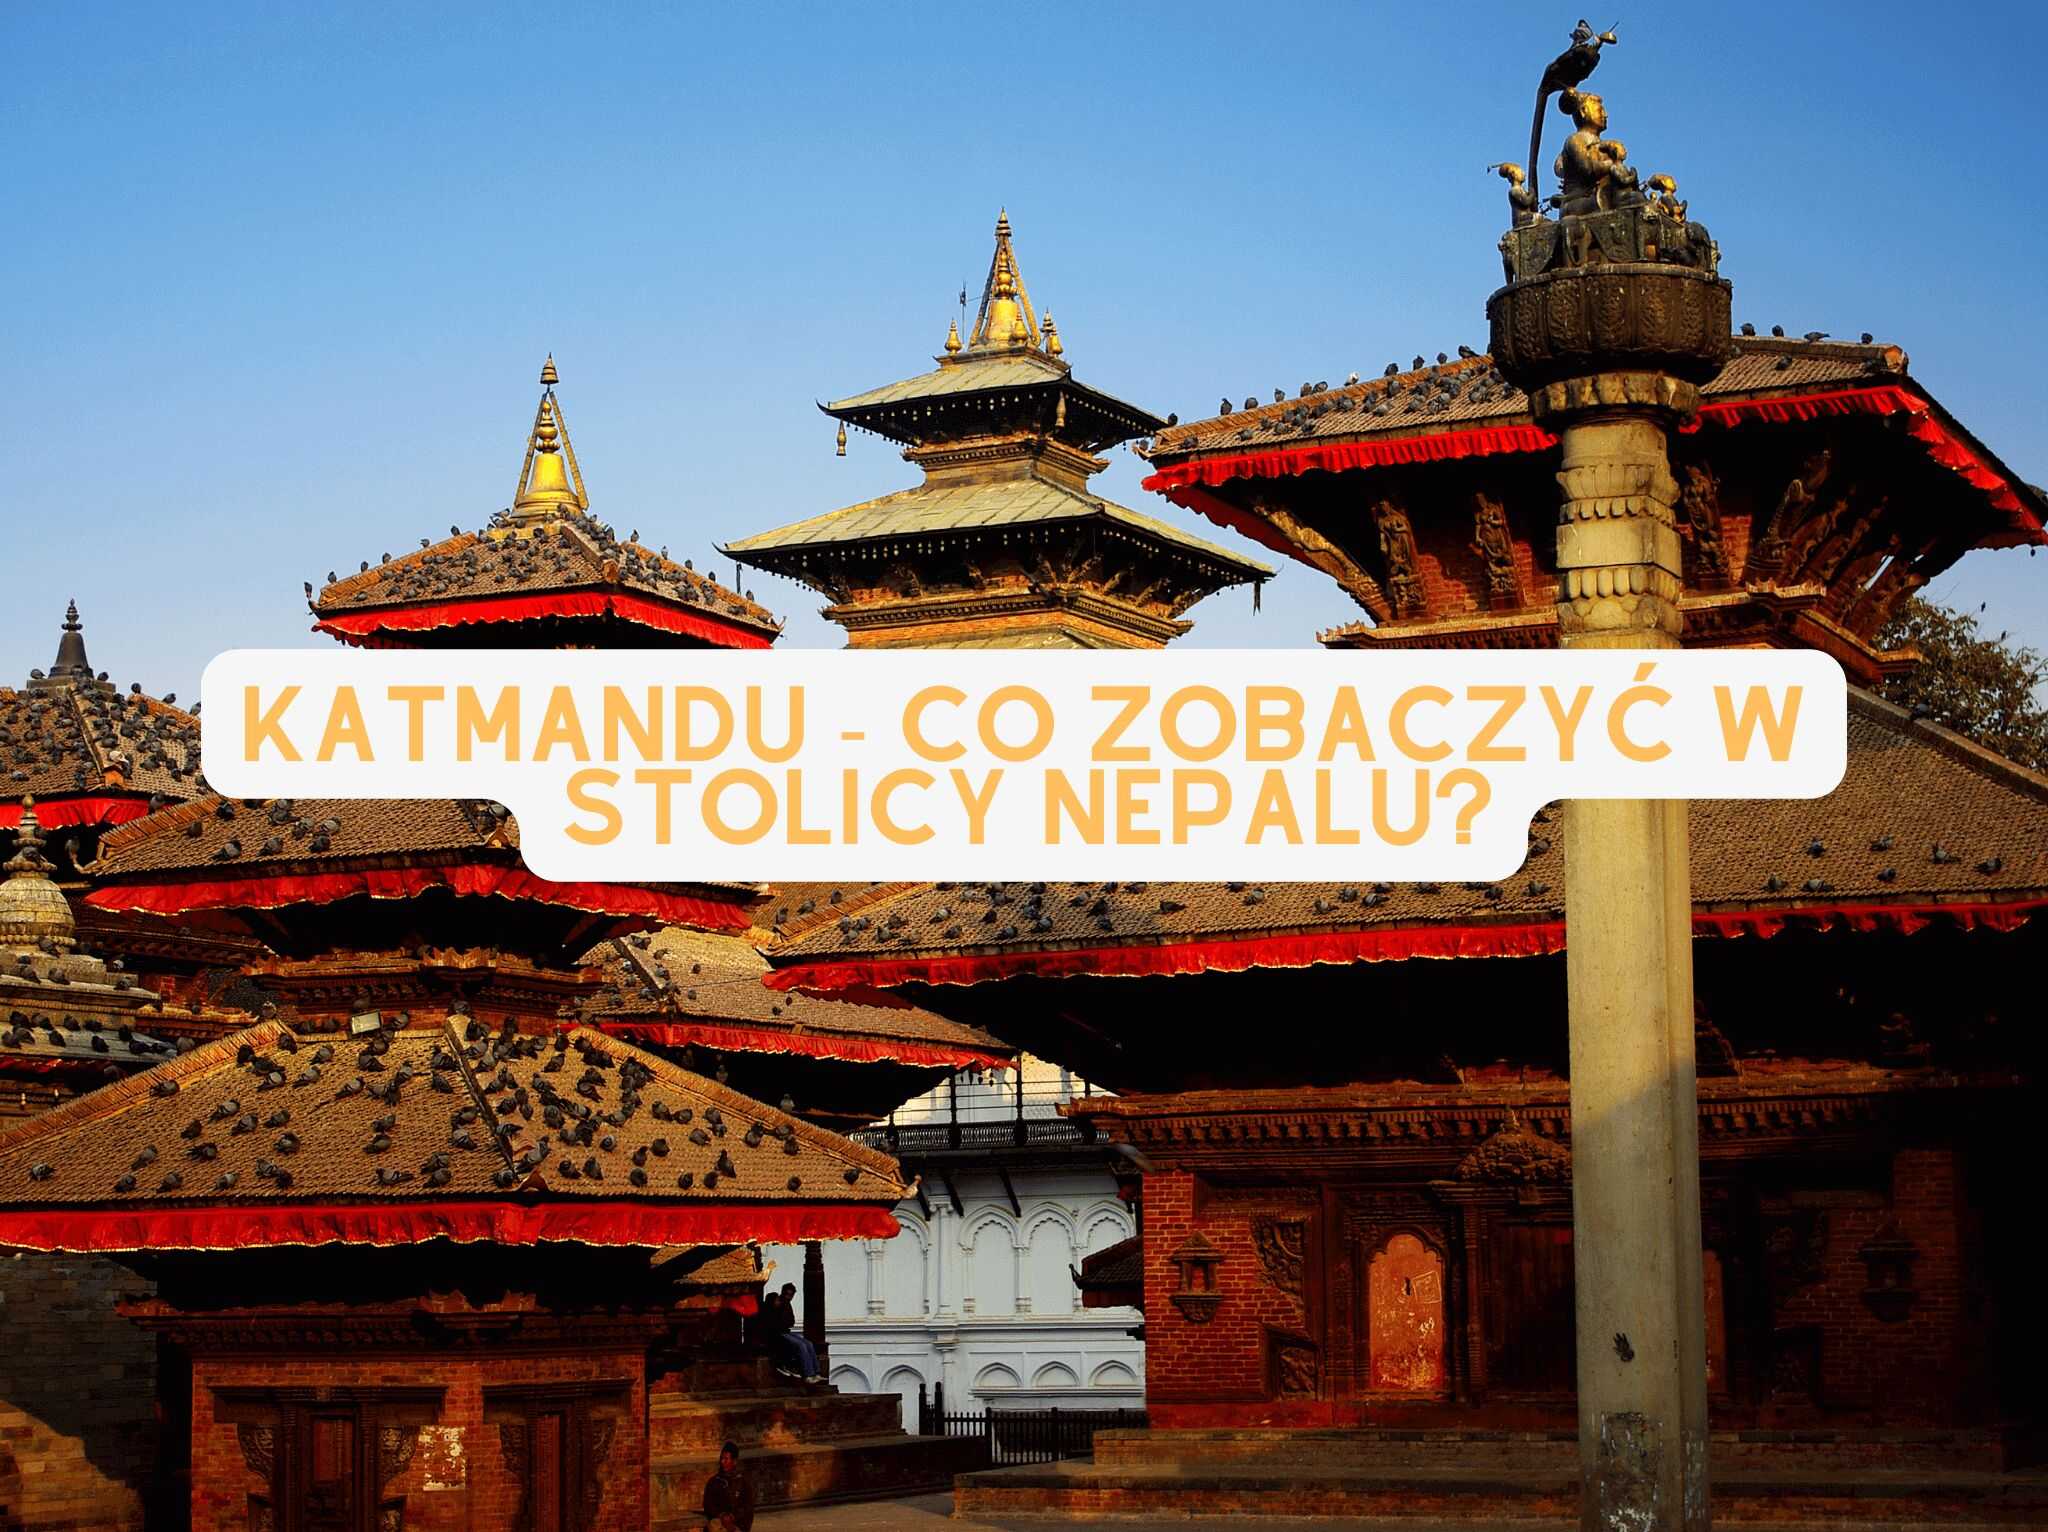 Katmandu - co zobaczyć w stolicy Nepalu? - blog 4challenge.org